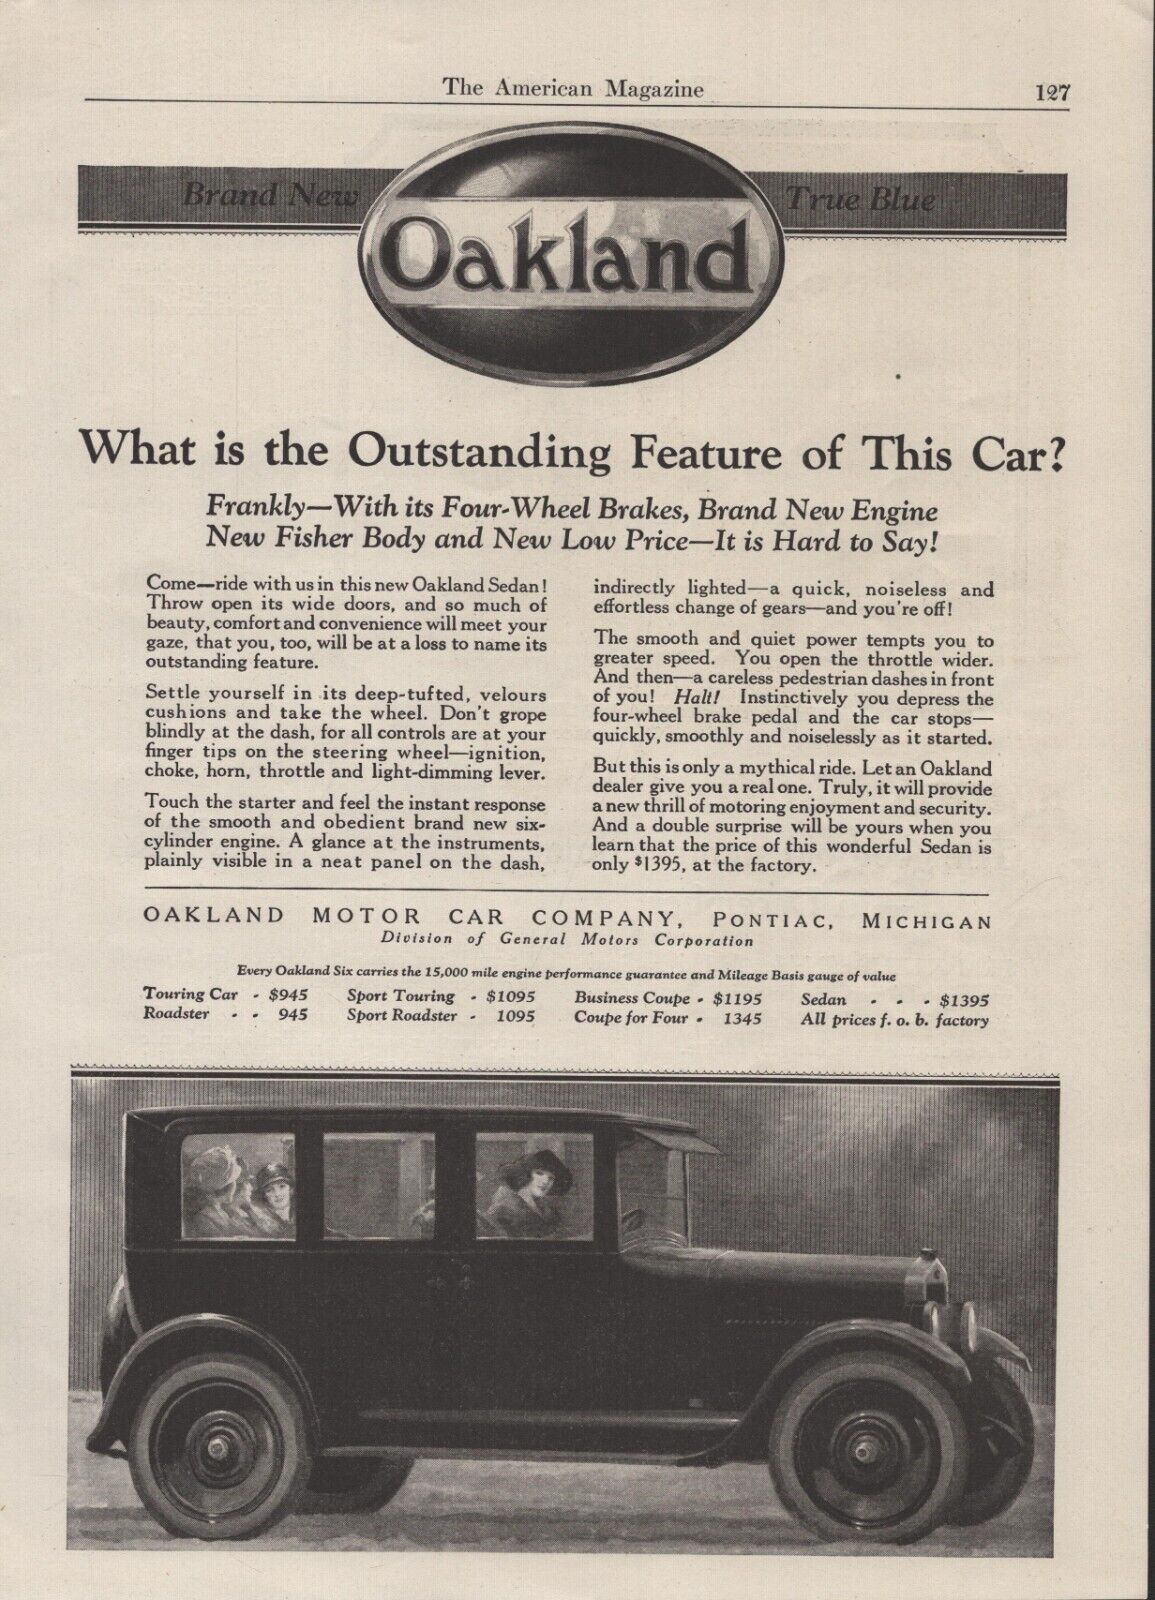 Oakland Automobile - Touring Car- 1923 - Oakland Motor Car Company -Pontiac Mich